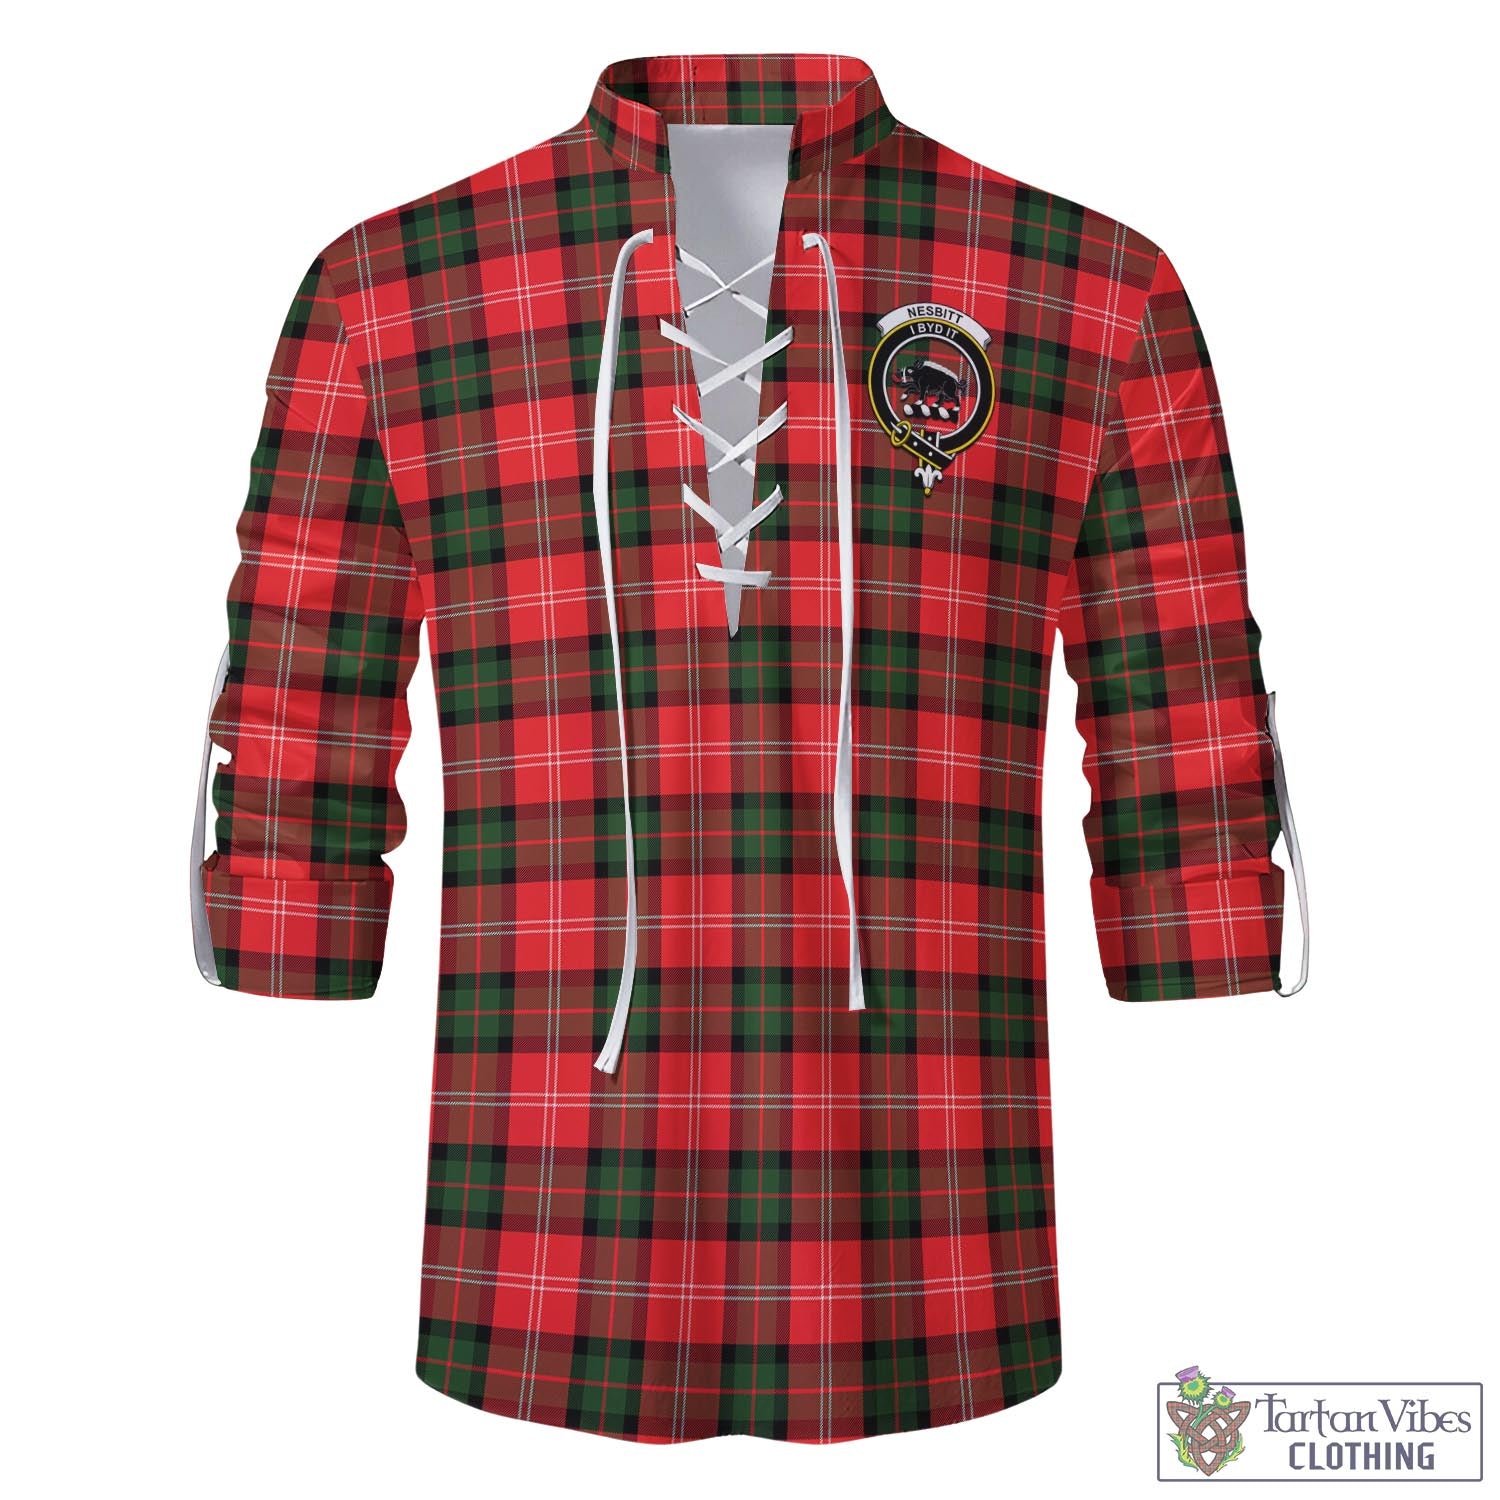 Tartan Vibes Clothing Nesbitt Modern Tartan Men's Scottish Traditional Jacobite Ghillie Kilt Shirt with Family Crest